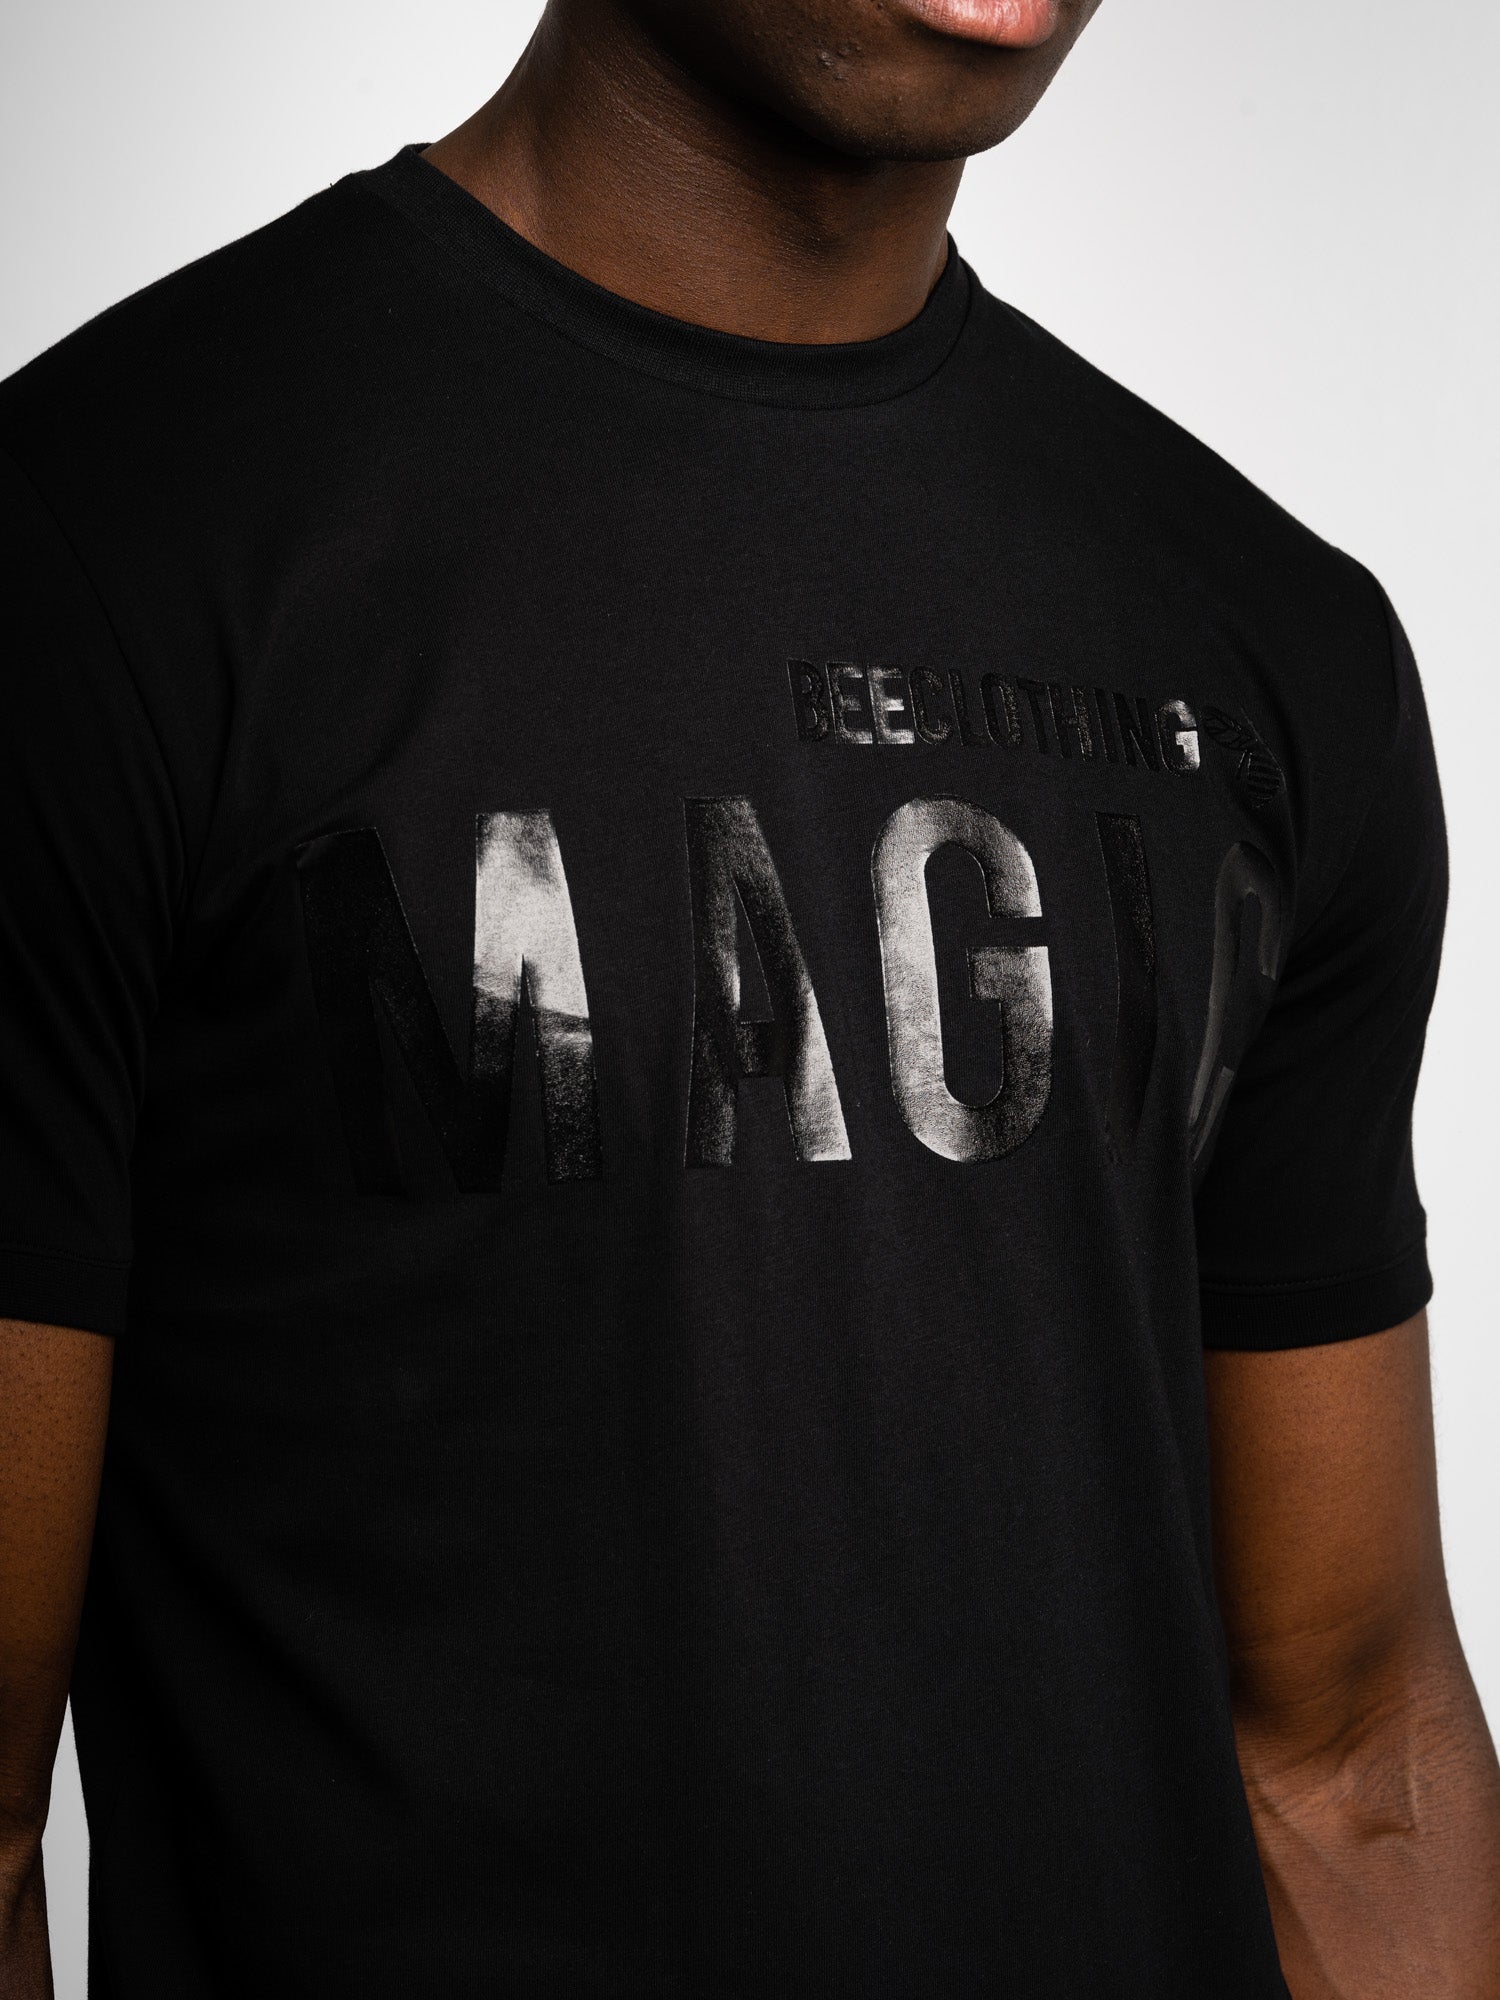 Ανδρικό T-Shirt MagicBee Curved Hem Glossy Logo Tee “MAGIC BEE” (7627465785602)